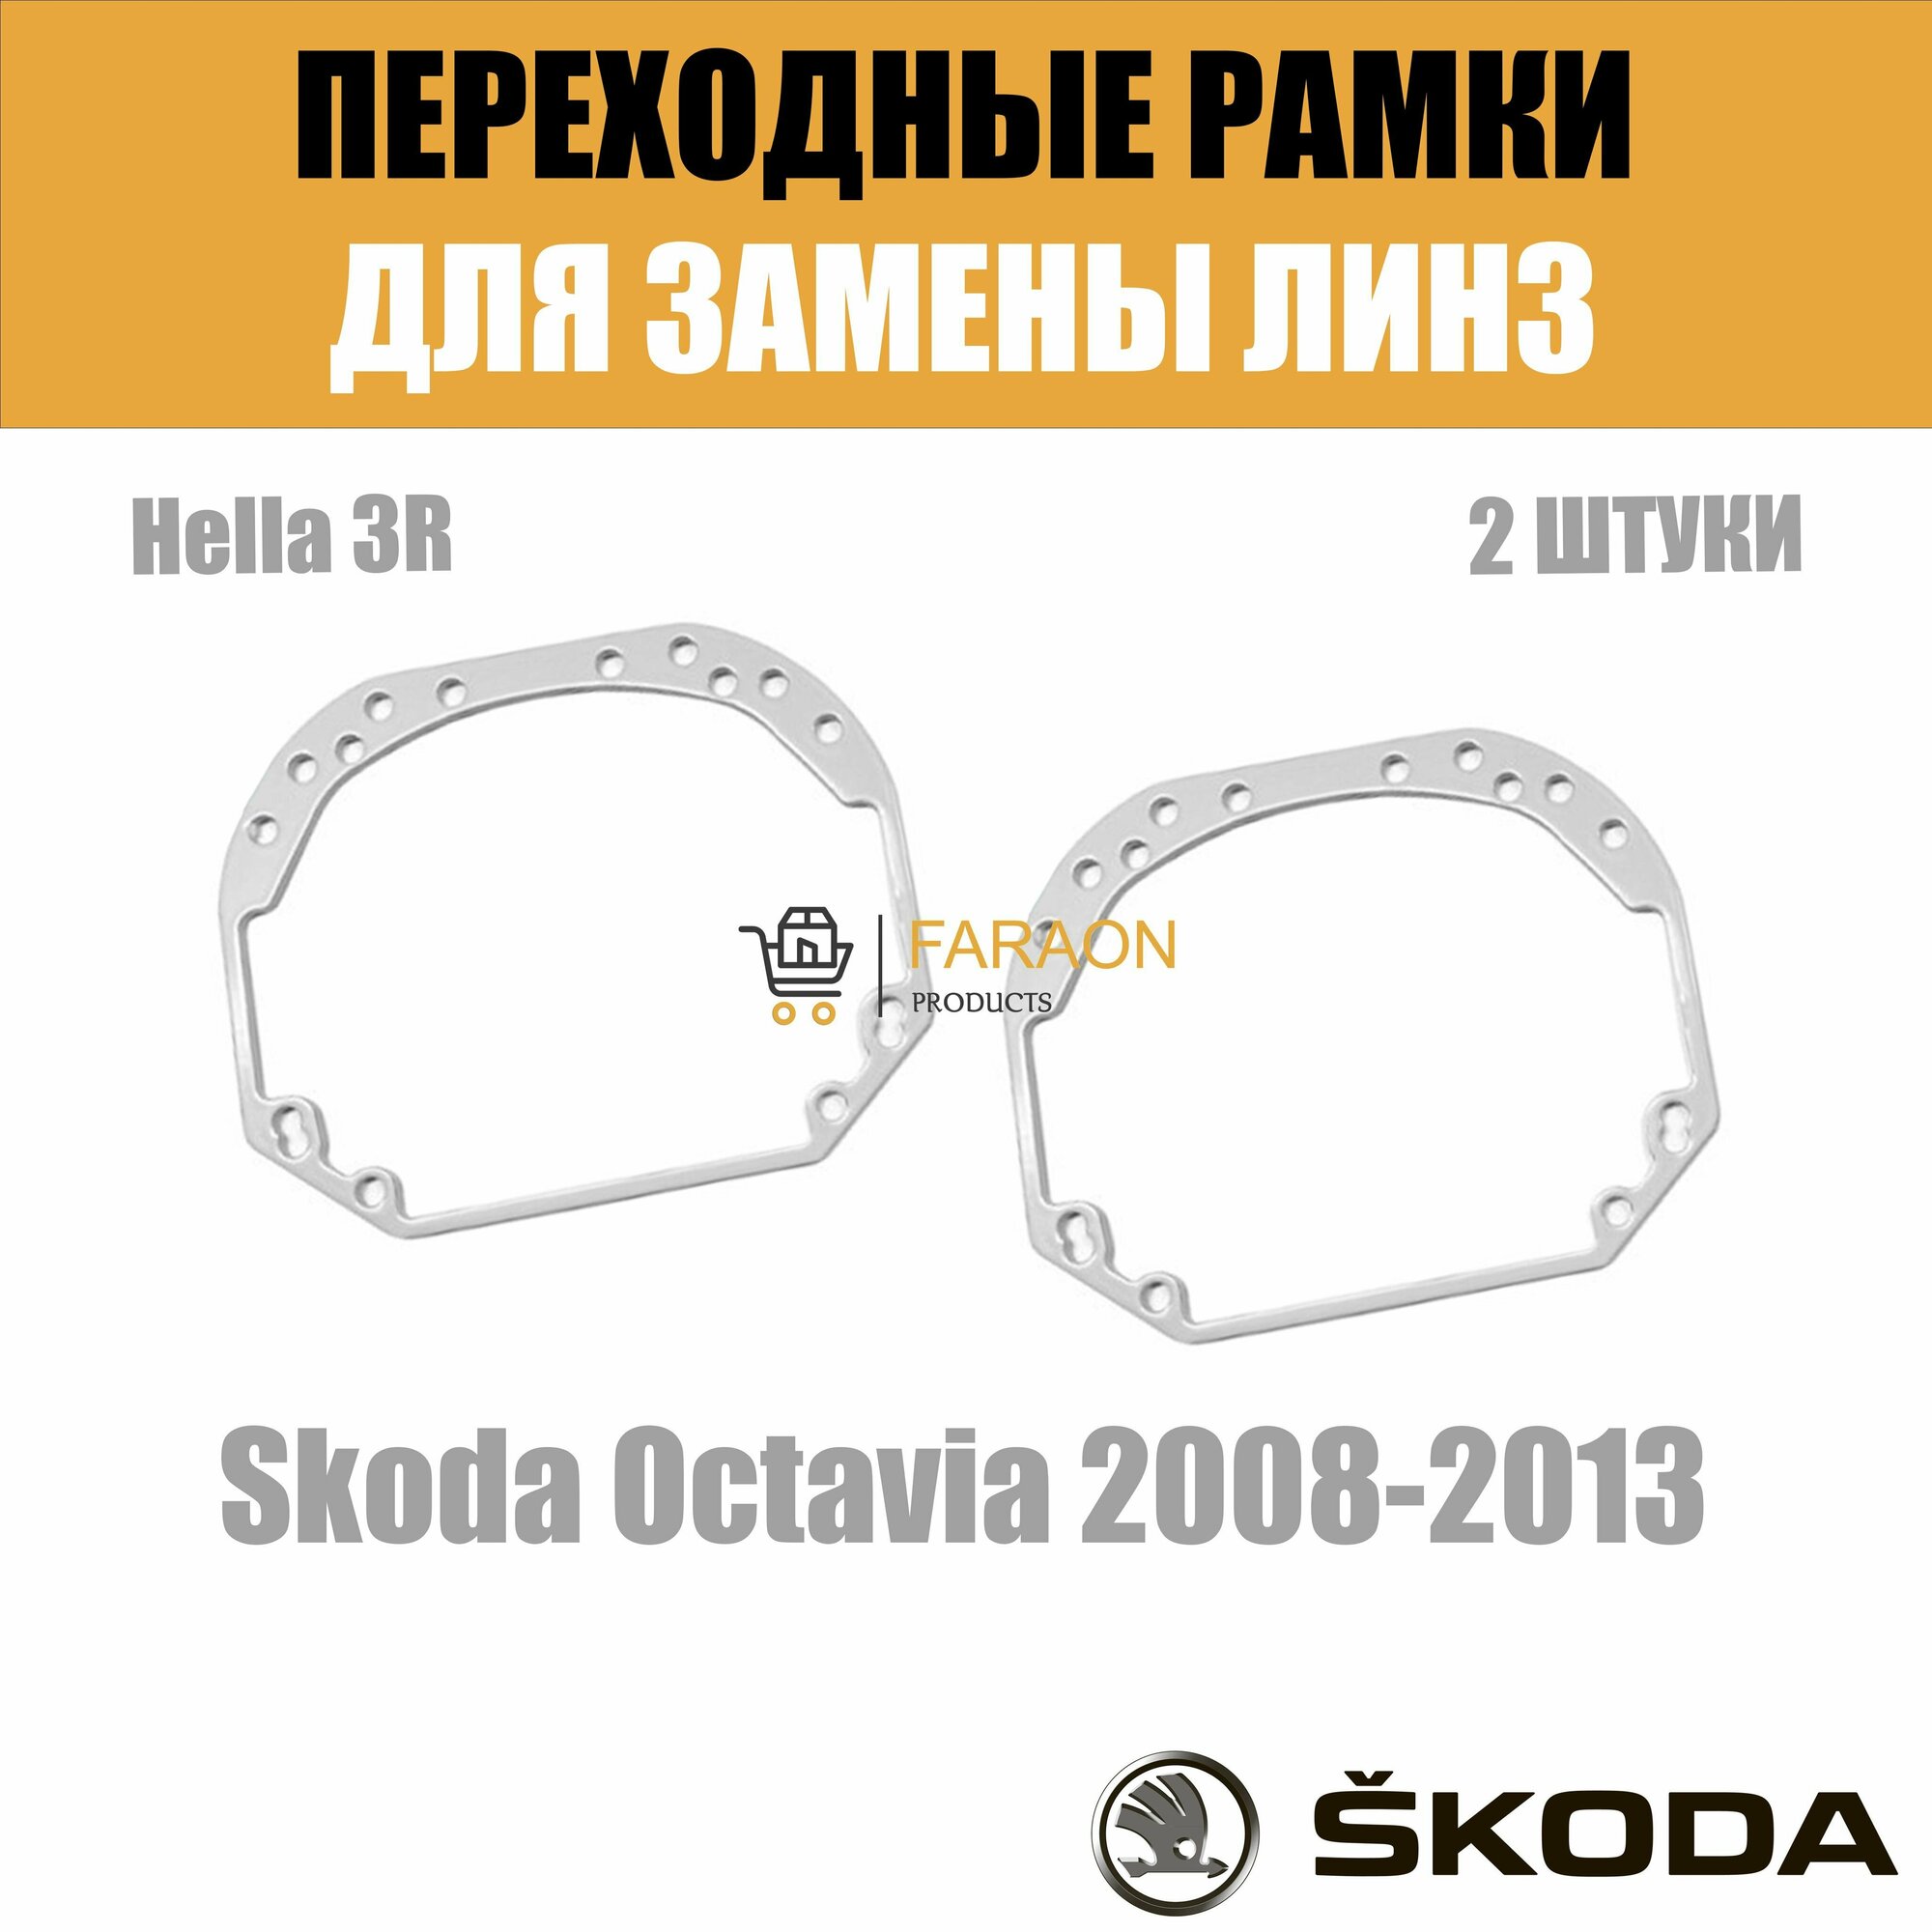 Переходные рамки для замены линз №1 на Skoda Octavia А5 2008-2013 Крепление Hella 3R